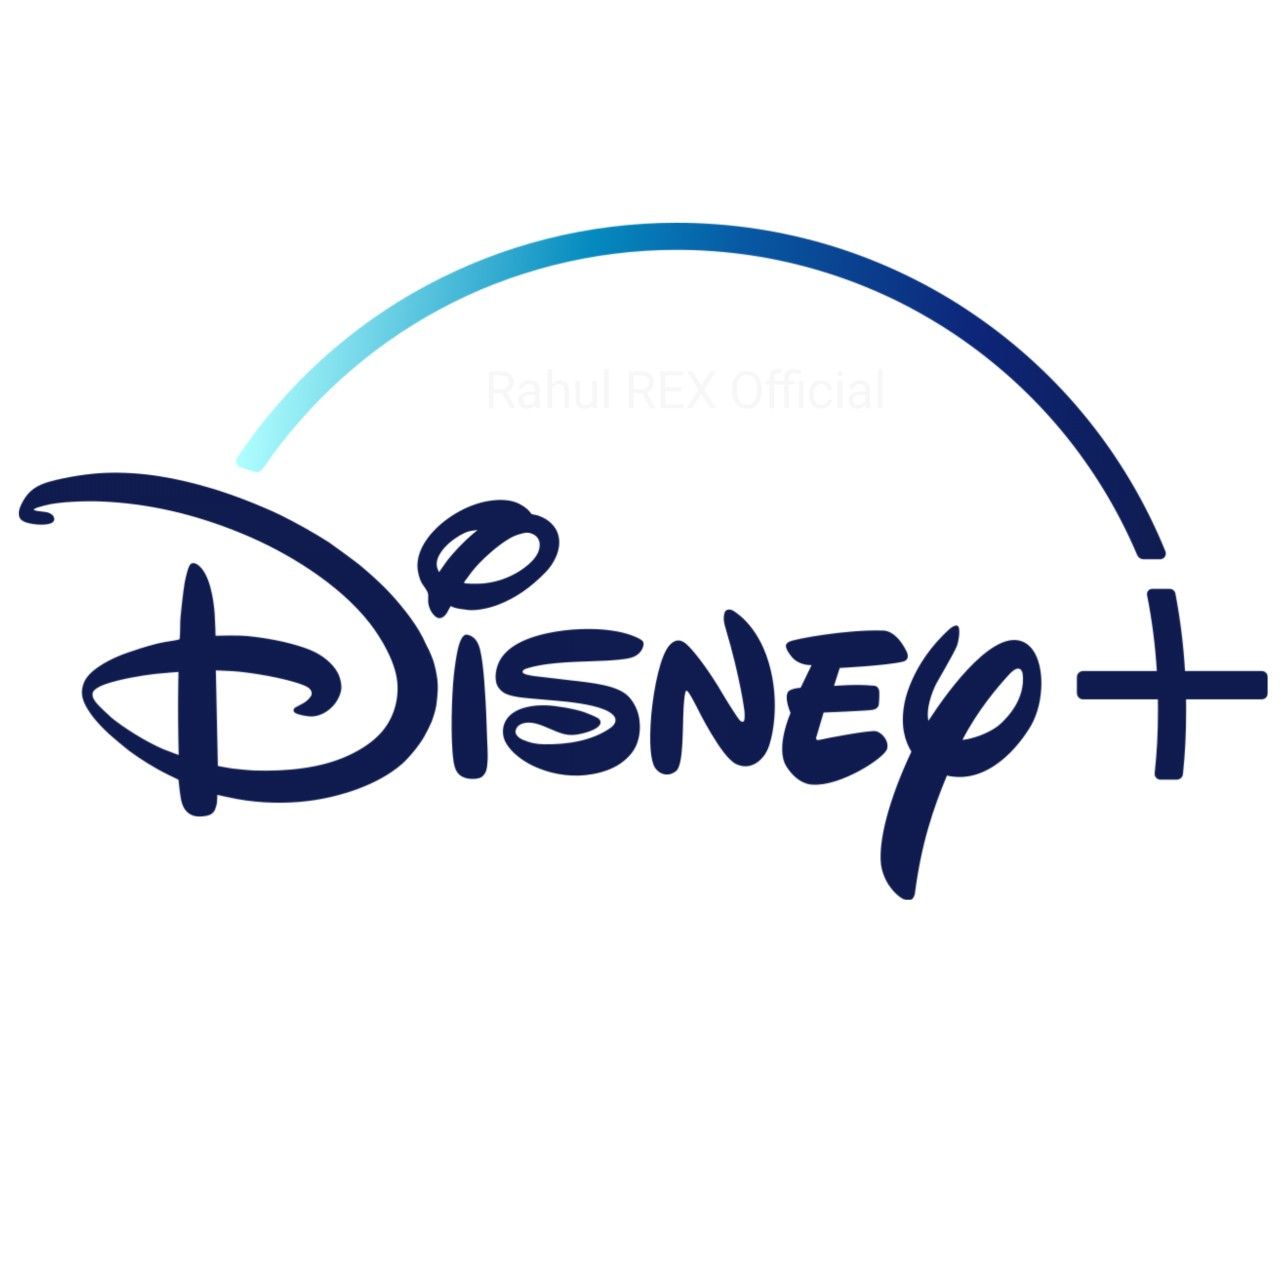 Disney+ ya está aquí: pruébalo gratis durante 7 días. Después, 6,99 euros al mes o 69,99 euros la suscripción anual.